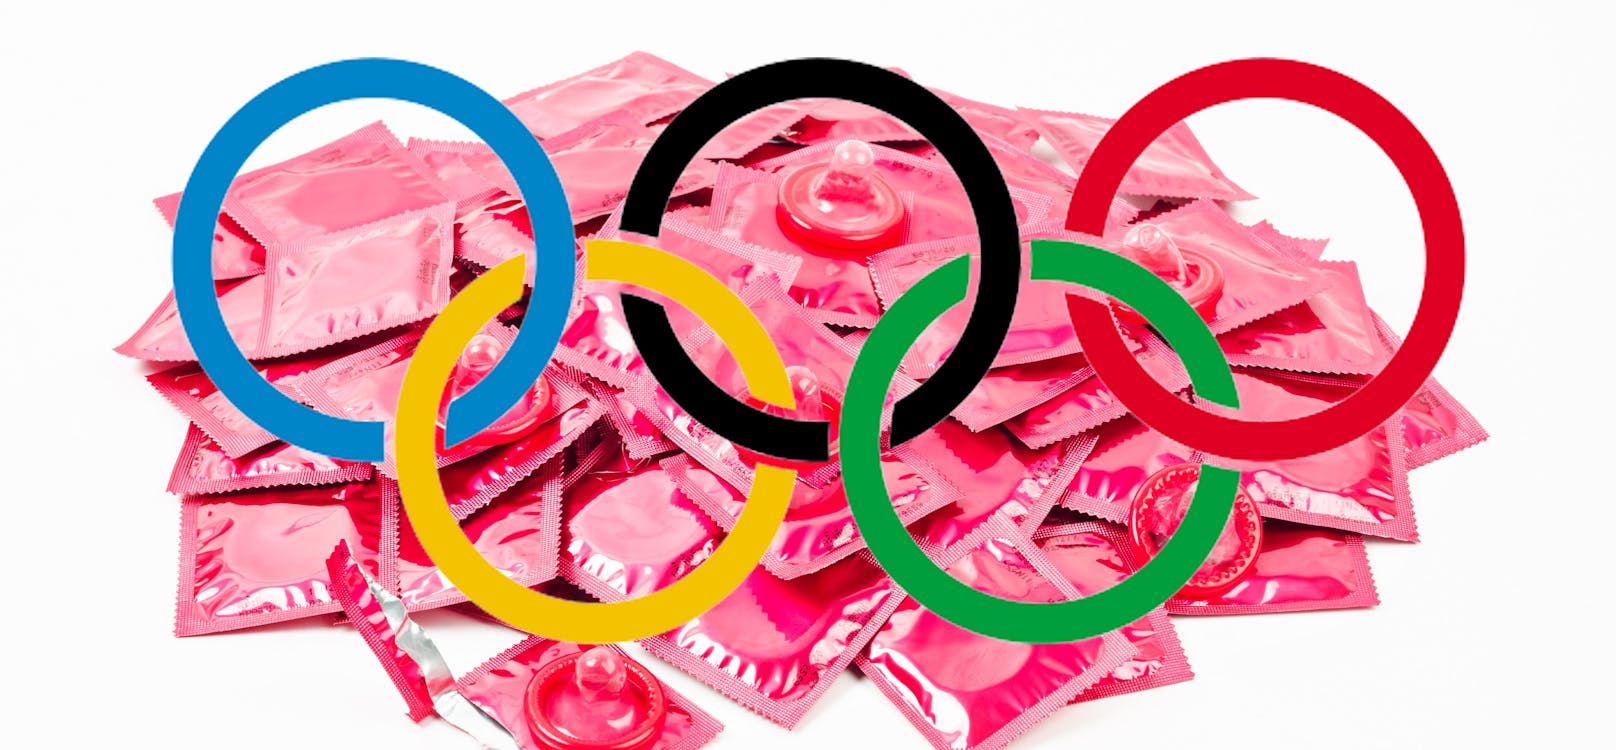 Kondom-Lieferung für die Olympischen Spiele